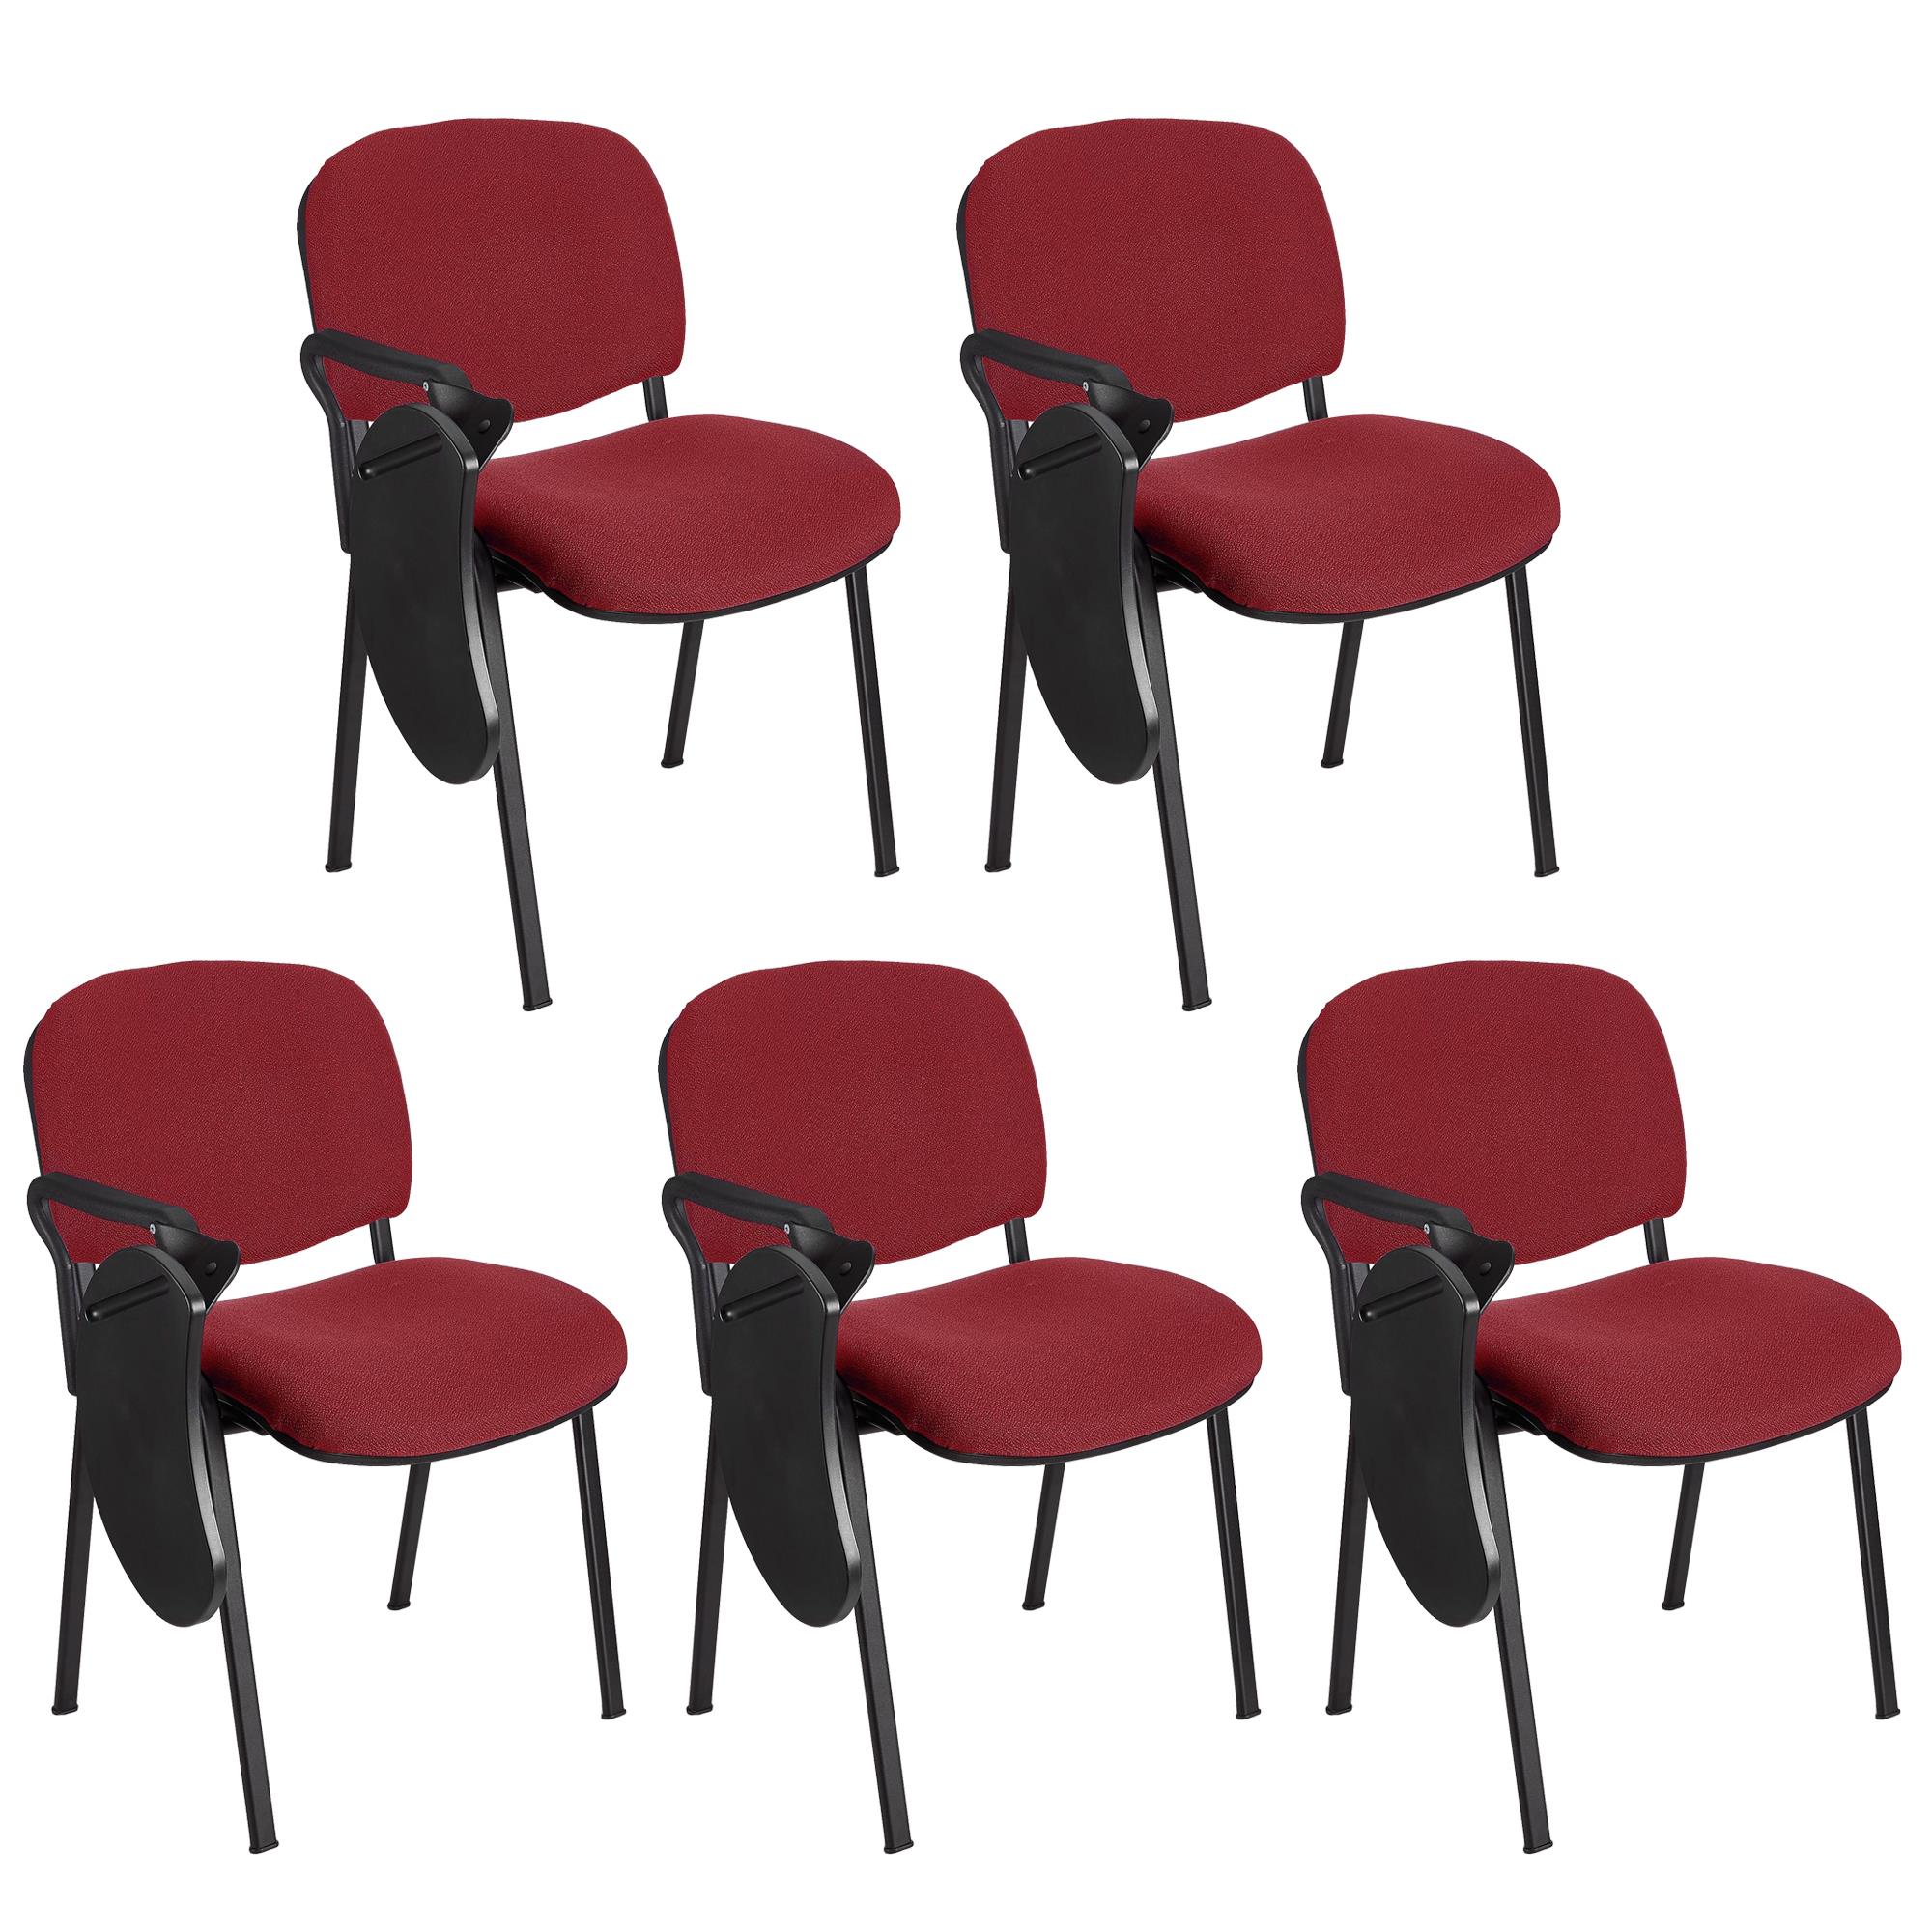 Lote 5 Cadeiras de Visita MOBY COM PALMATÓRIA, Confortável, Pernas Pretas, Cor Bordeaux